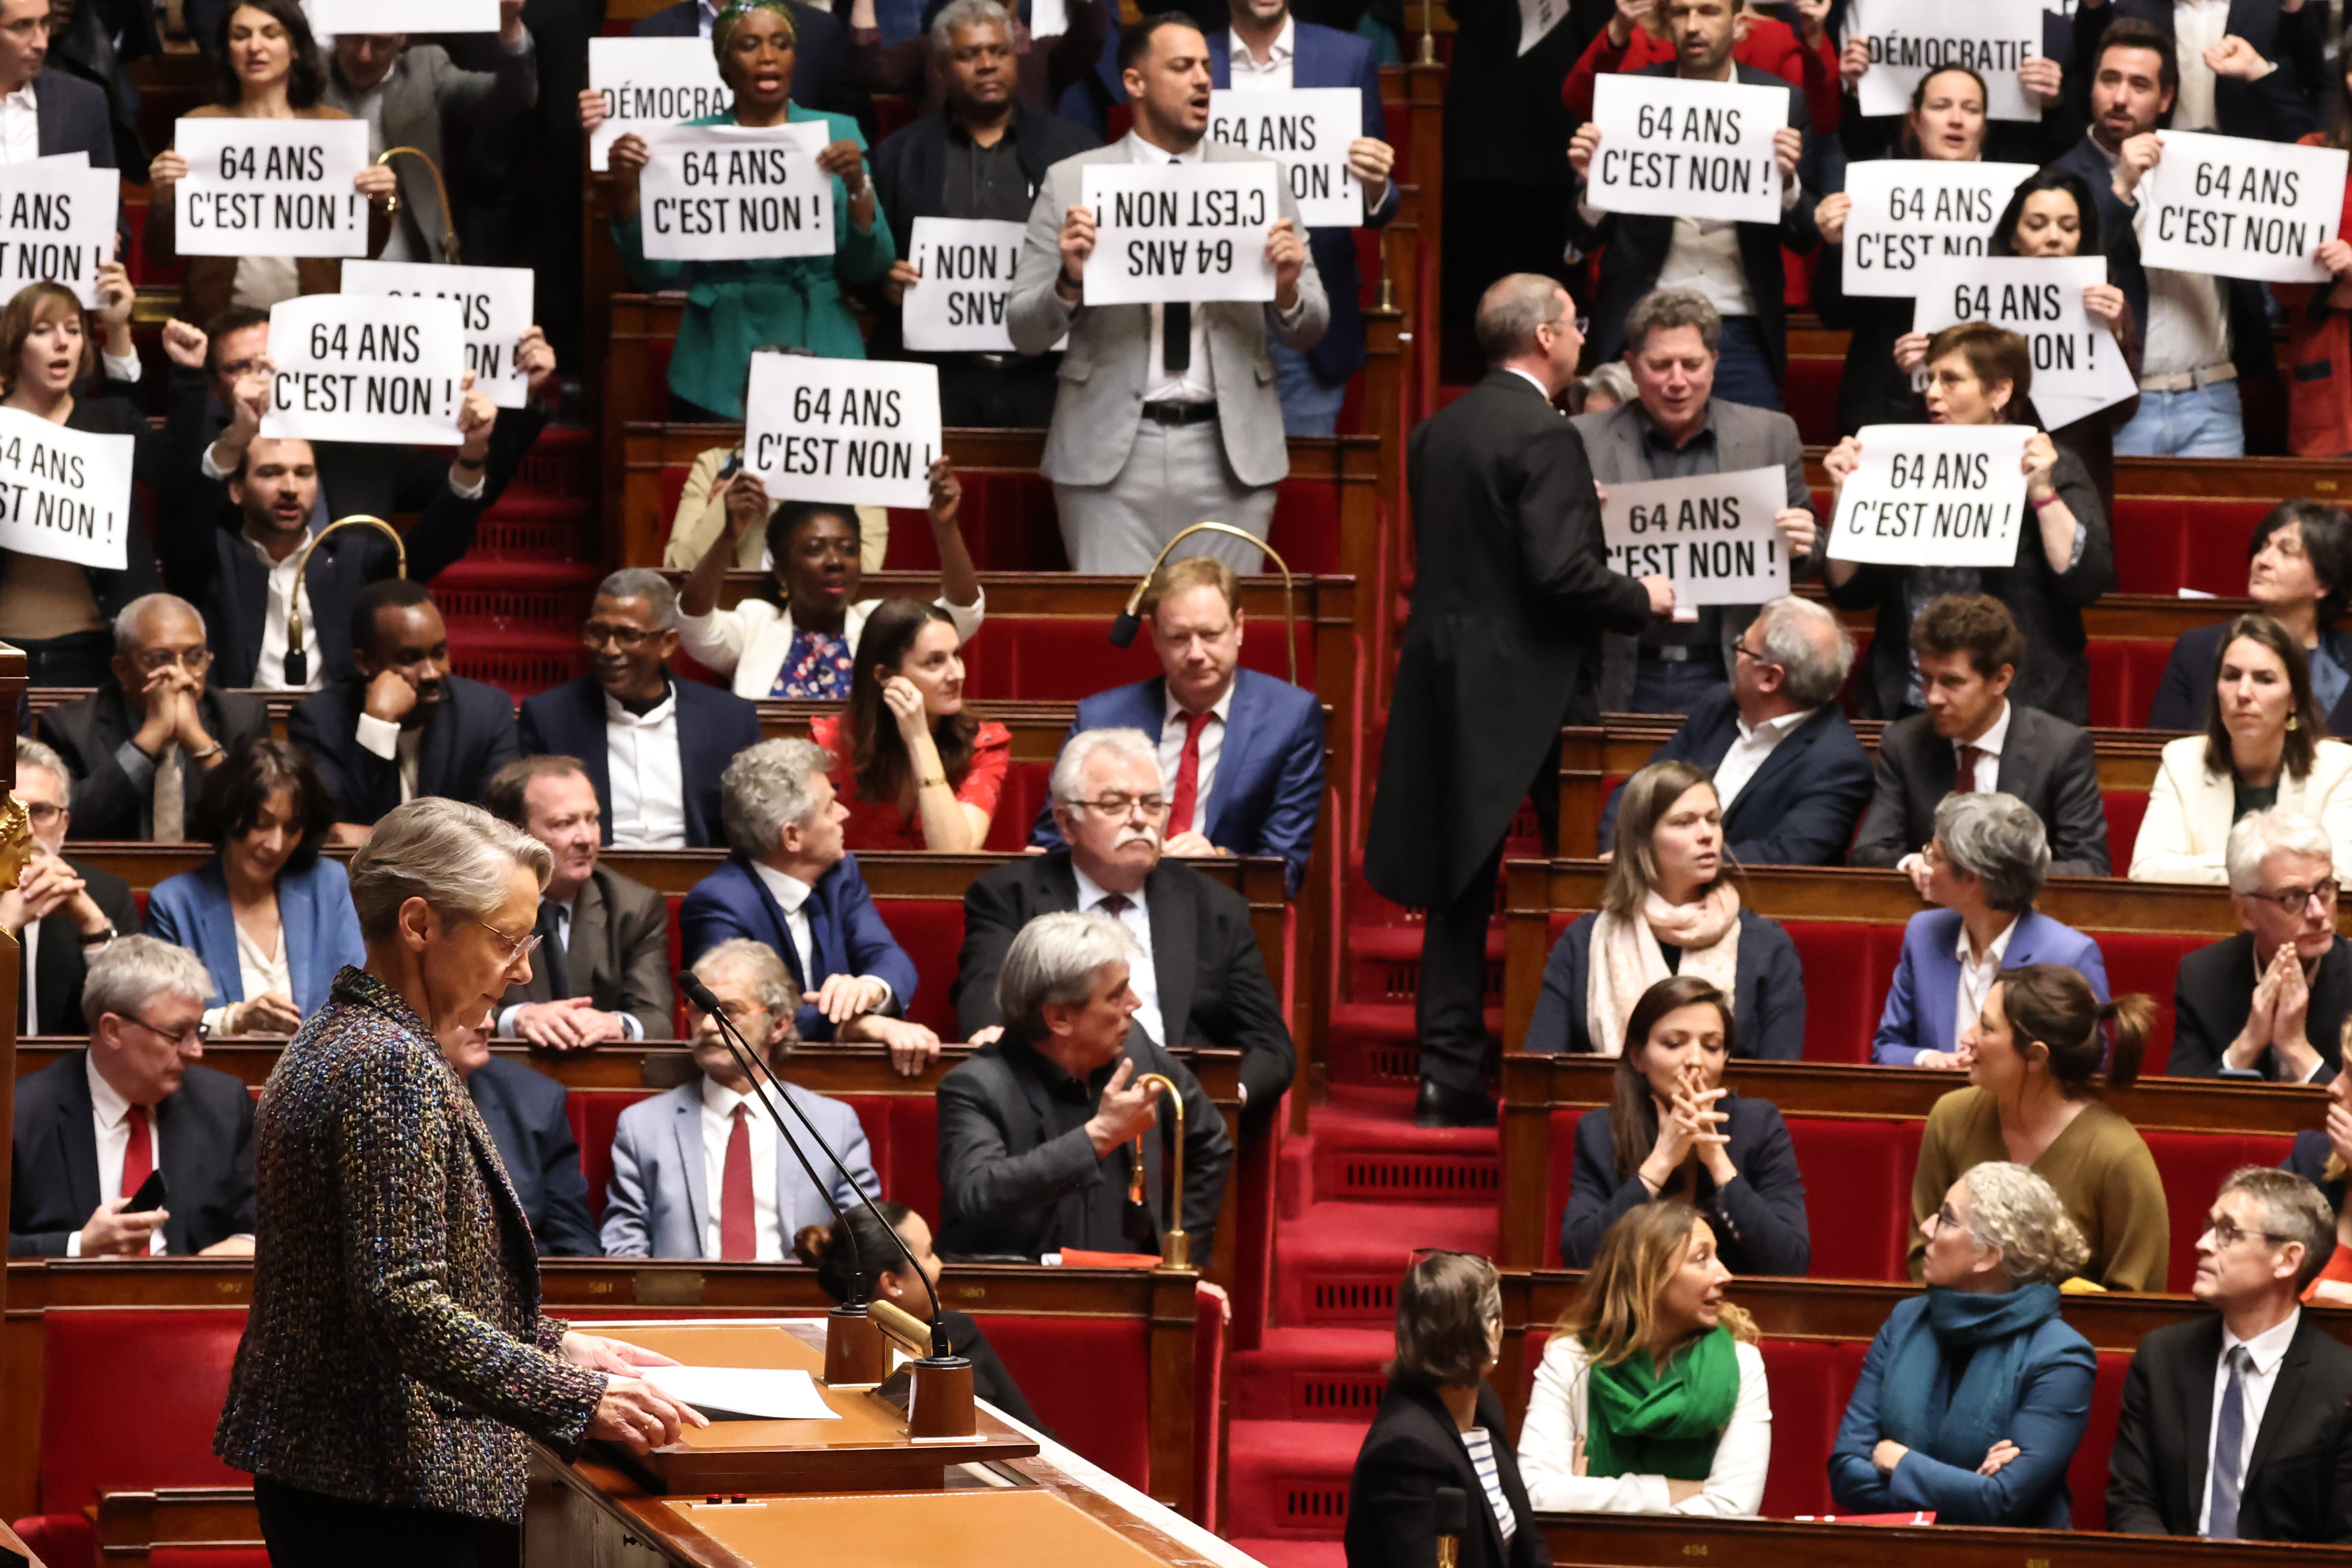 Le16 mars dernier, des députés de gauche avaient signifié dans l'hémicycle leur refus de la réforme des retraites pendant un discours d'Elisabeth Borne. LP/Fred Dugit